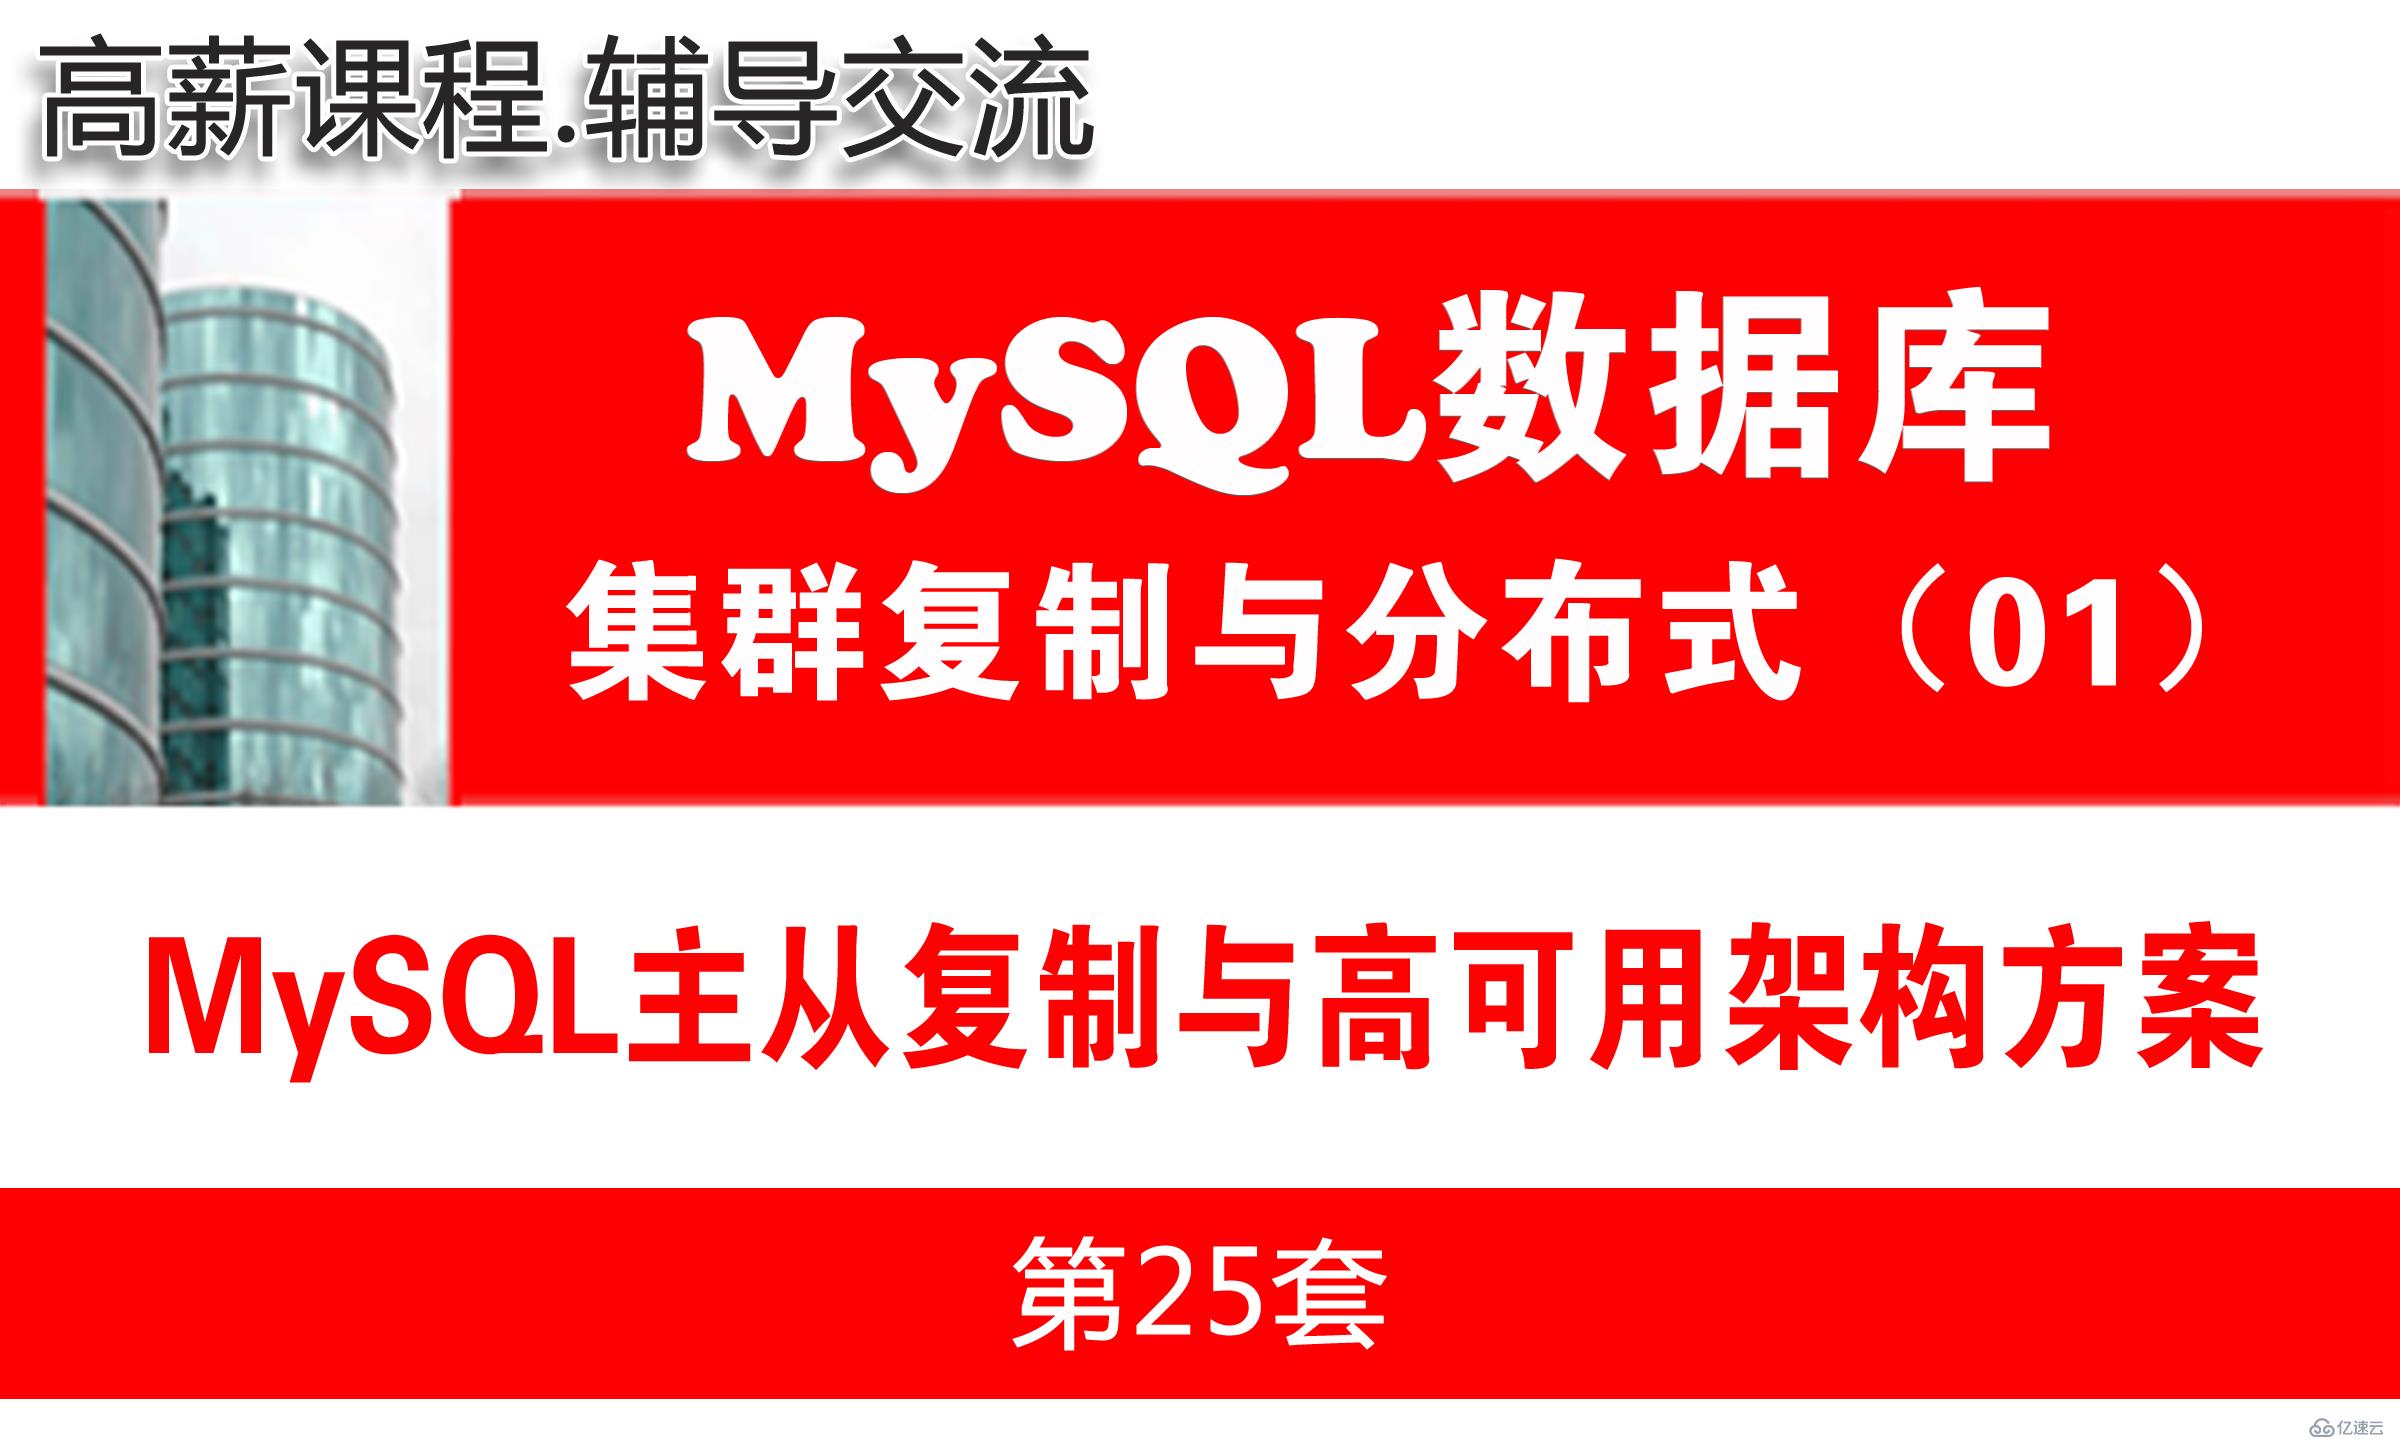 MySQL主从复制与高可用架构方案与项目环境准备_MySQL高可用复制与分布式集群架构01